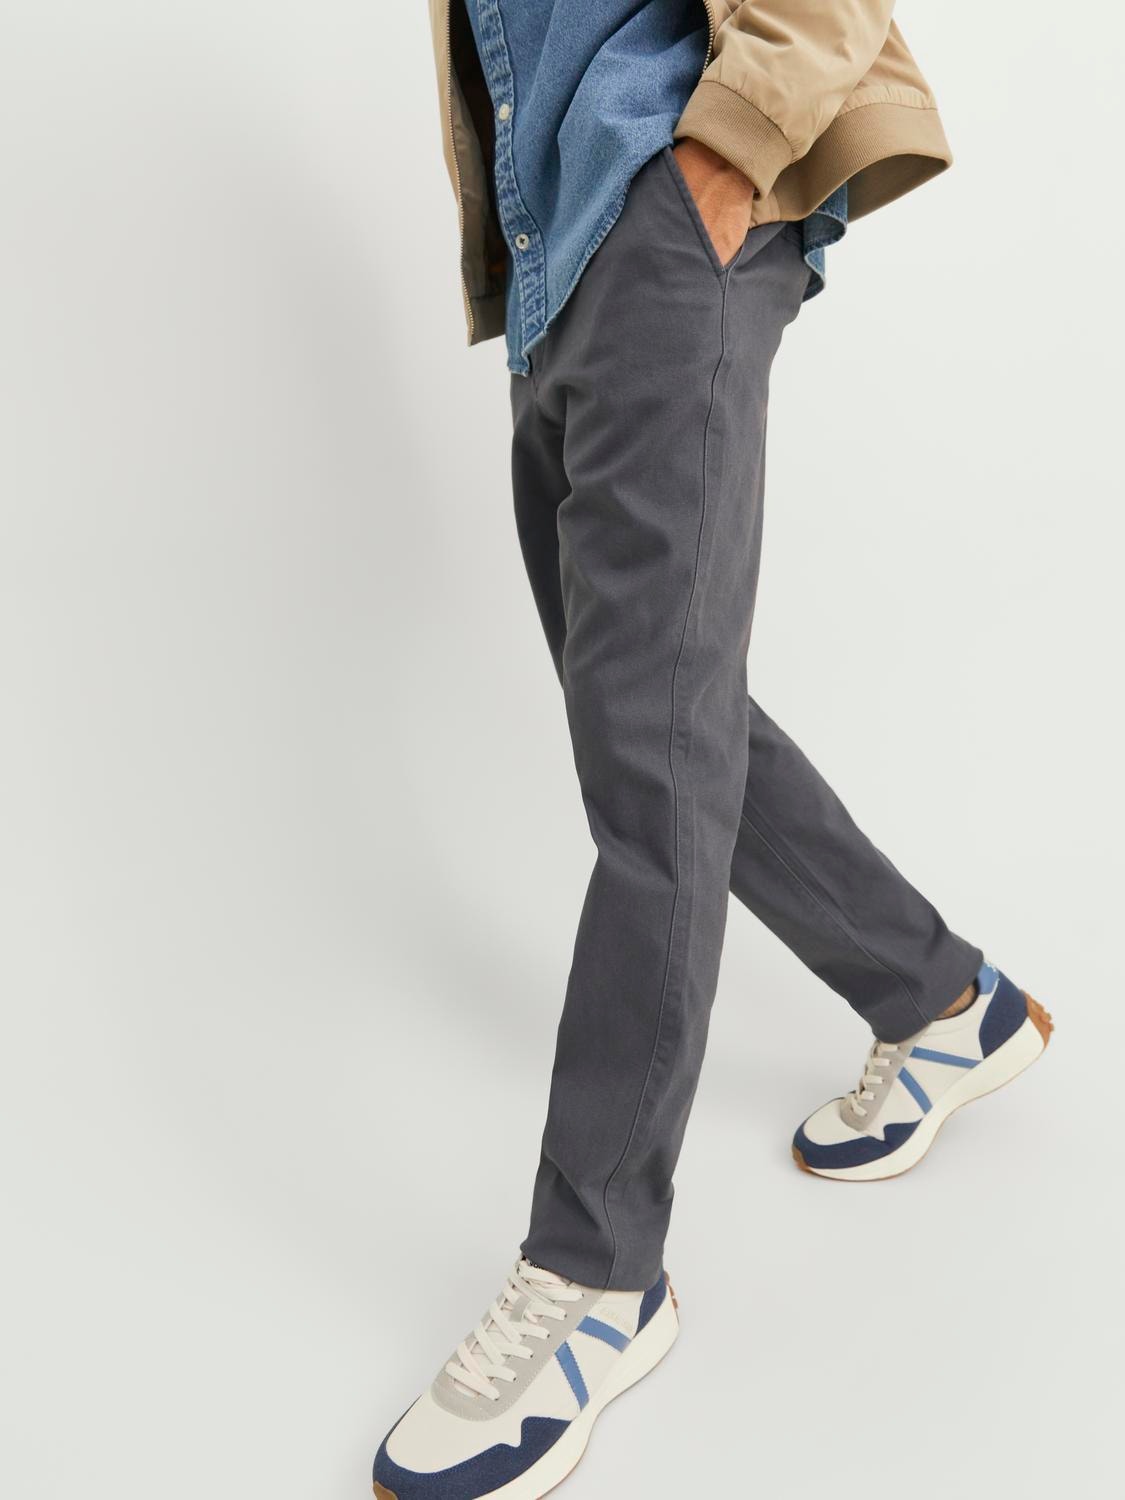 Jack & Jones Slim Fit Plátěné kalhoty Chino -Asphalt - 12174152